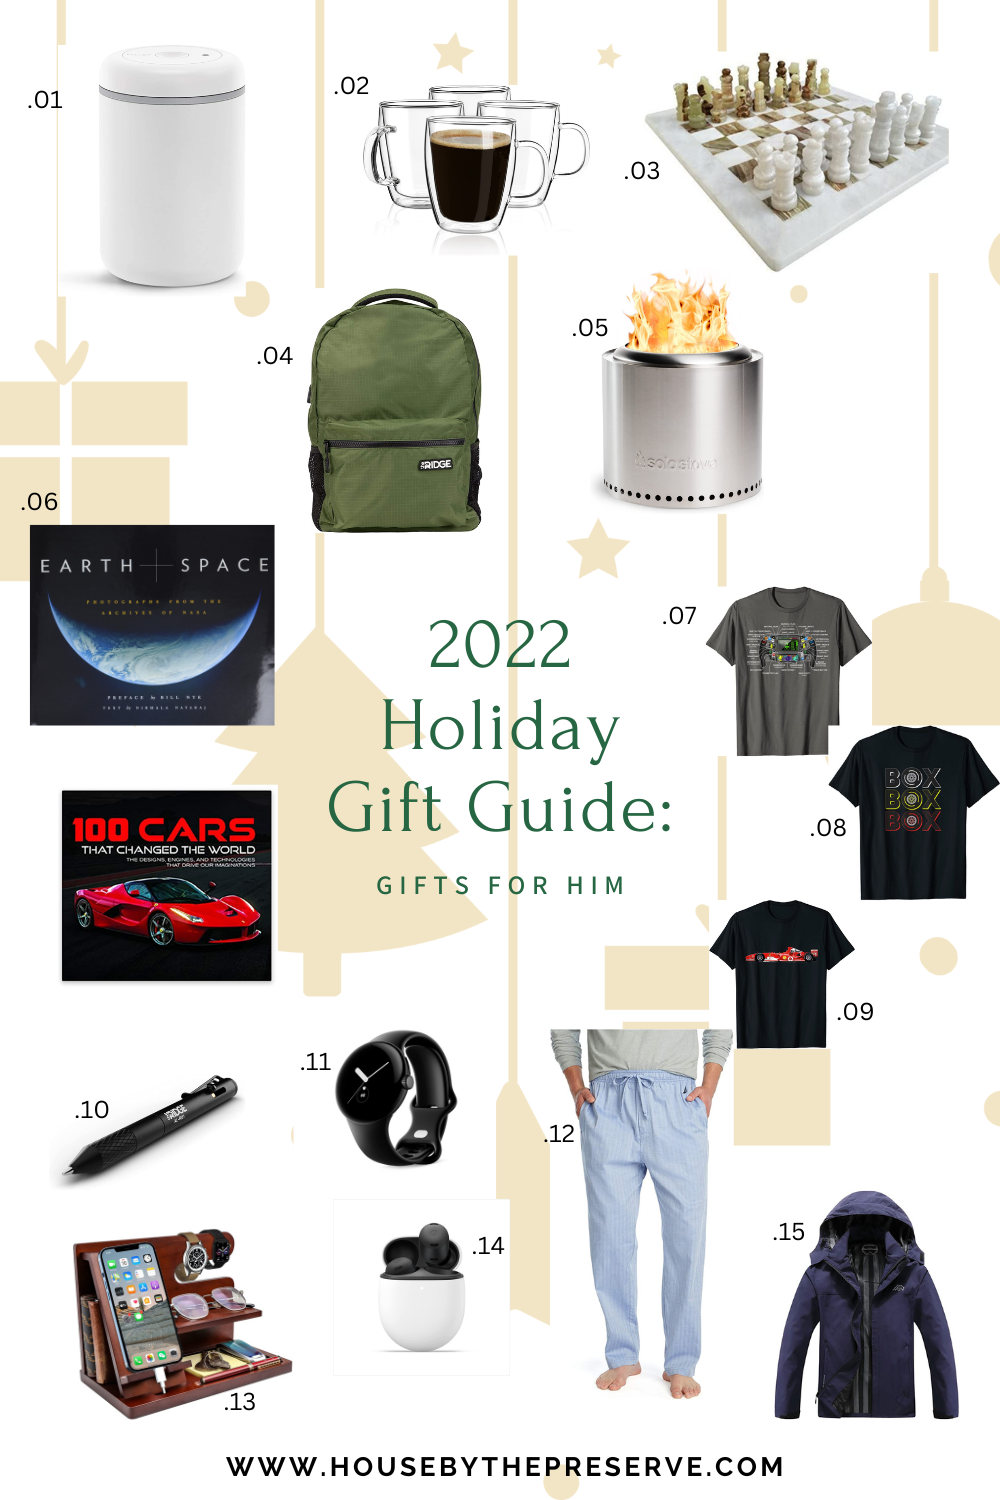 2022 Men's Gift Guide